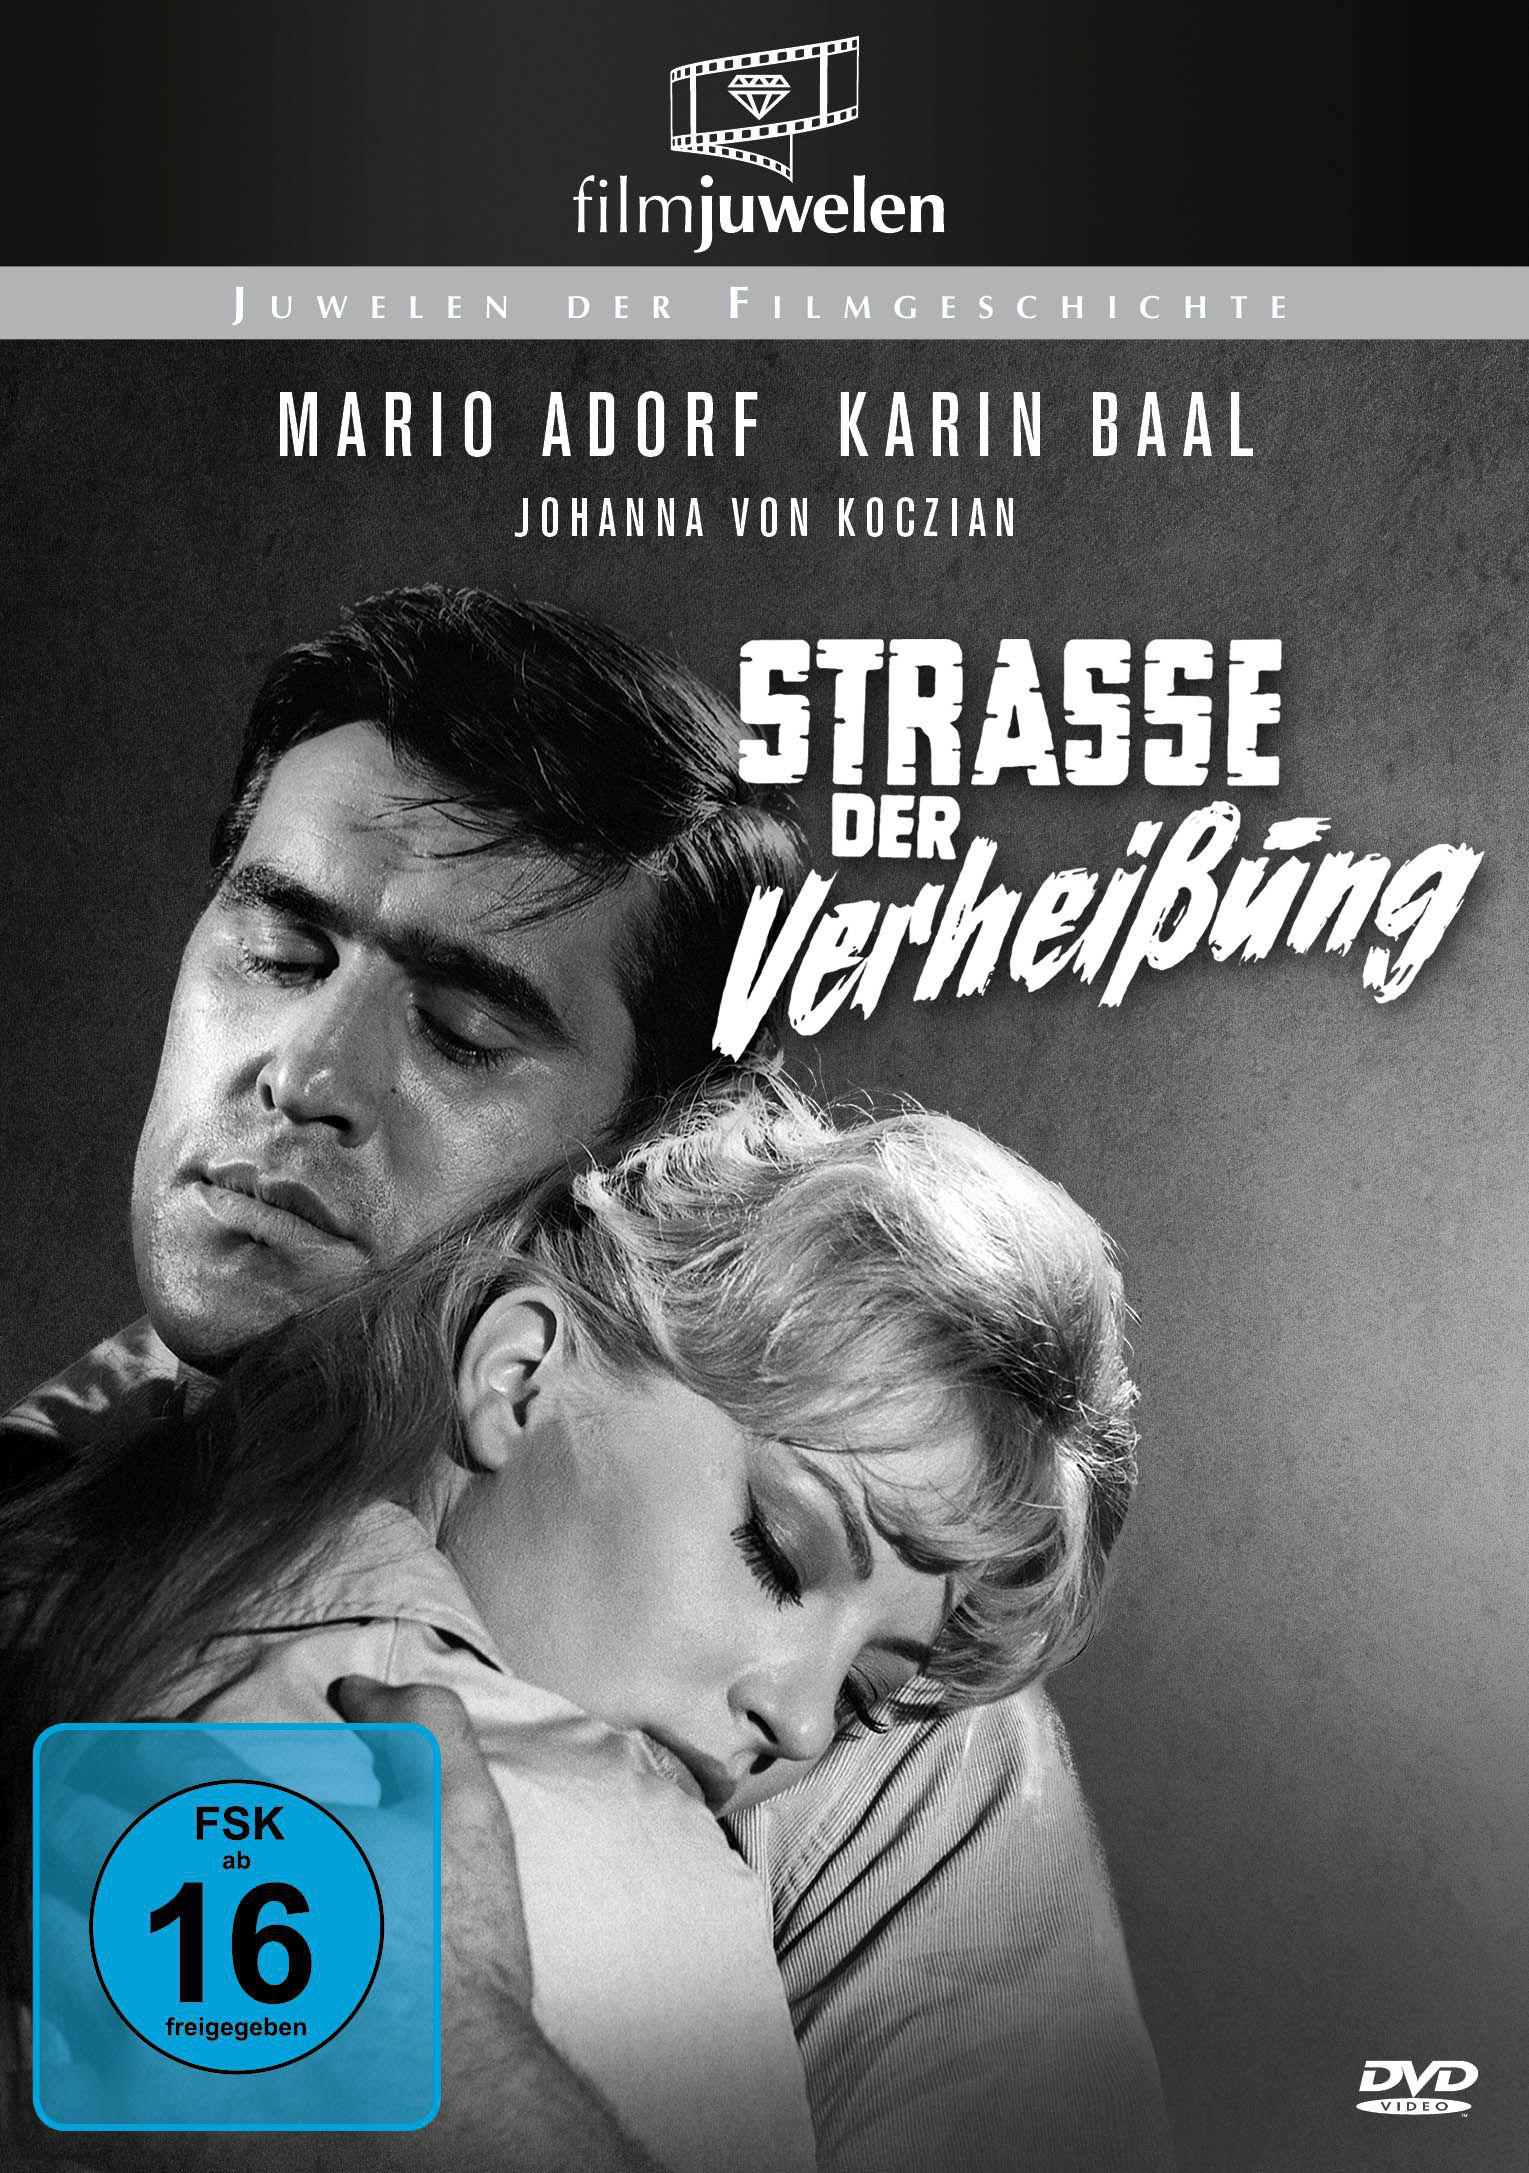 VERHEISSUNG STRASSE DVD DER (FILMJUWELEN)